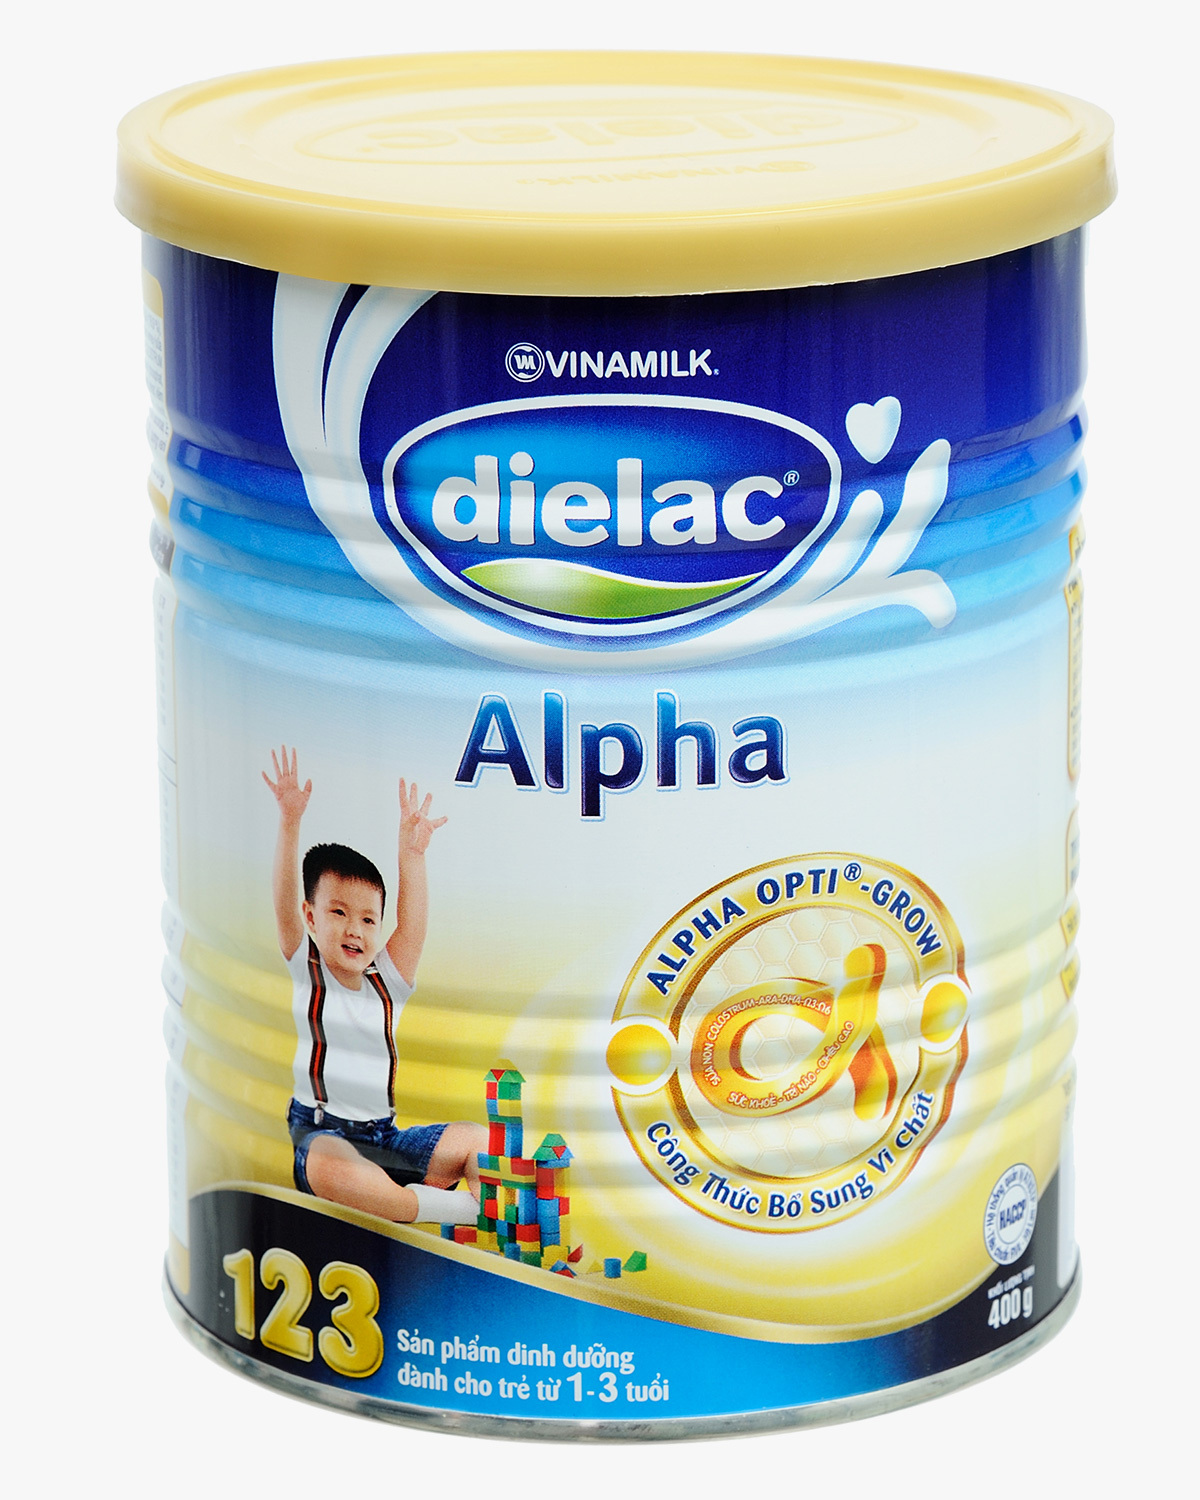 Sữa bột Dielac Alpha 123 - hộp 400g (hộp giấy dành cho trẻ từ 1 - 3 tuổi)